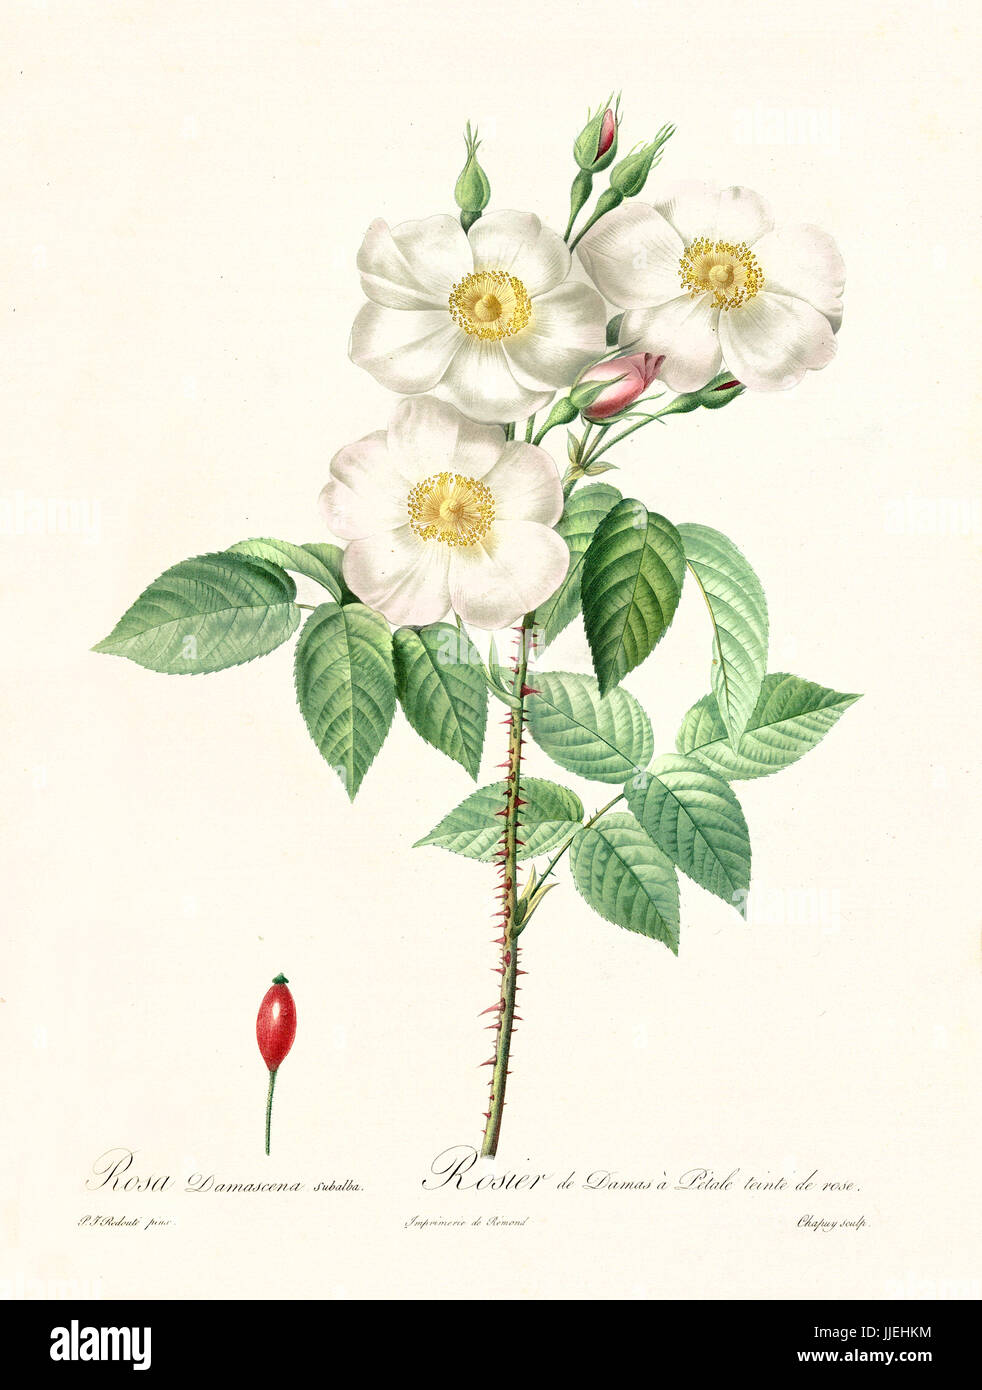 Vecchia illustrazione di rosa damascena subalba. Creato da P. R. Redoute, pubblicato su Les Roses, Imp. Firmin Didot, Parigi, 1817-24 Foto Stock